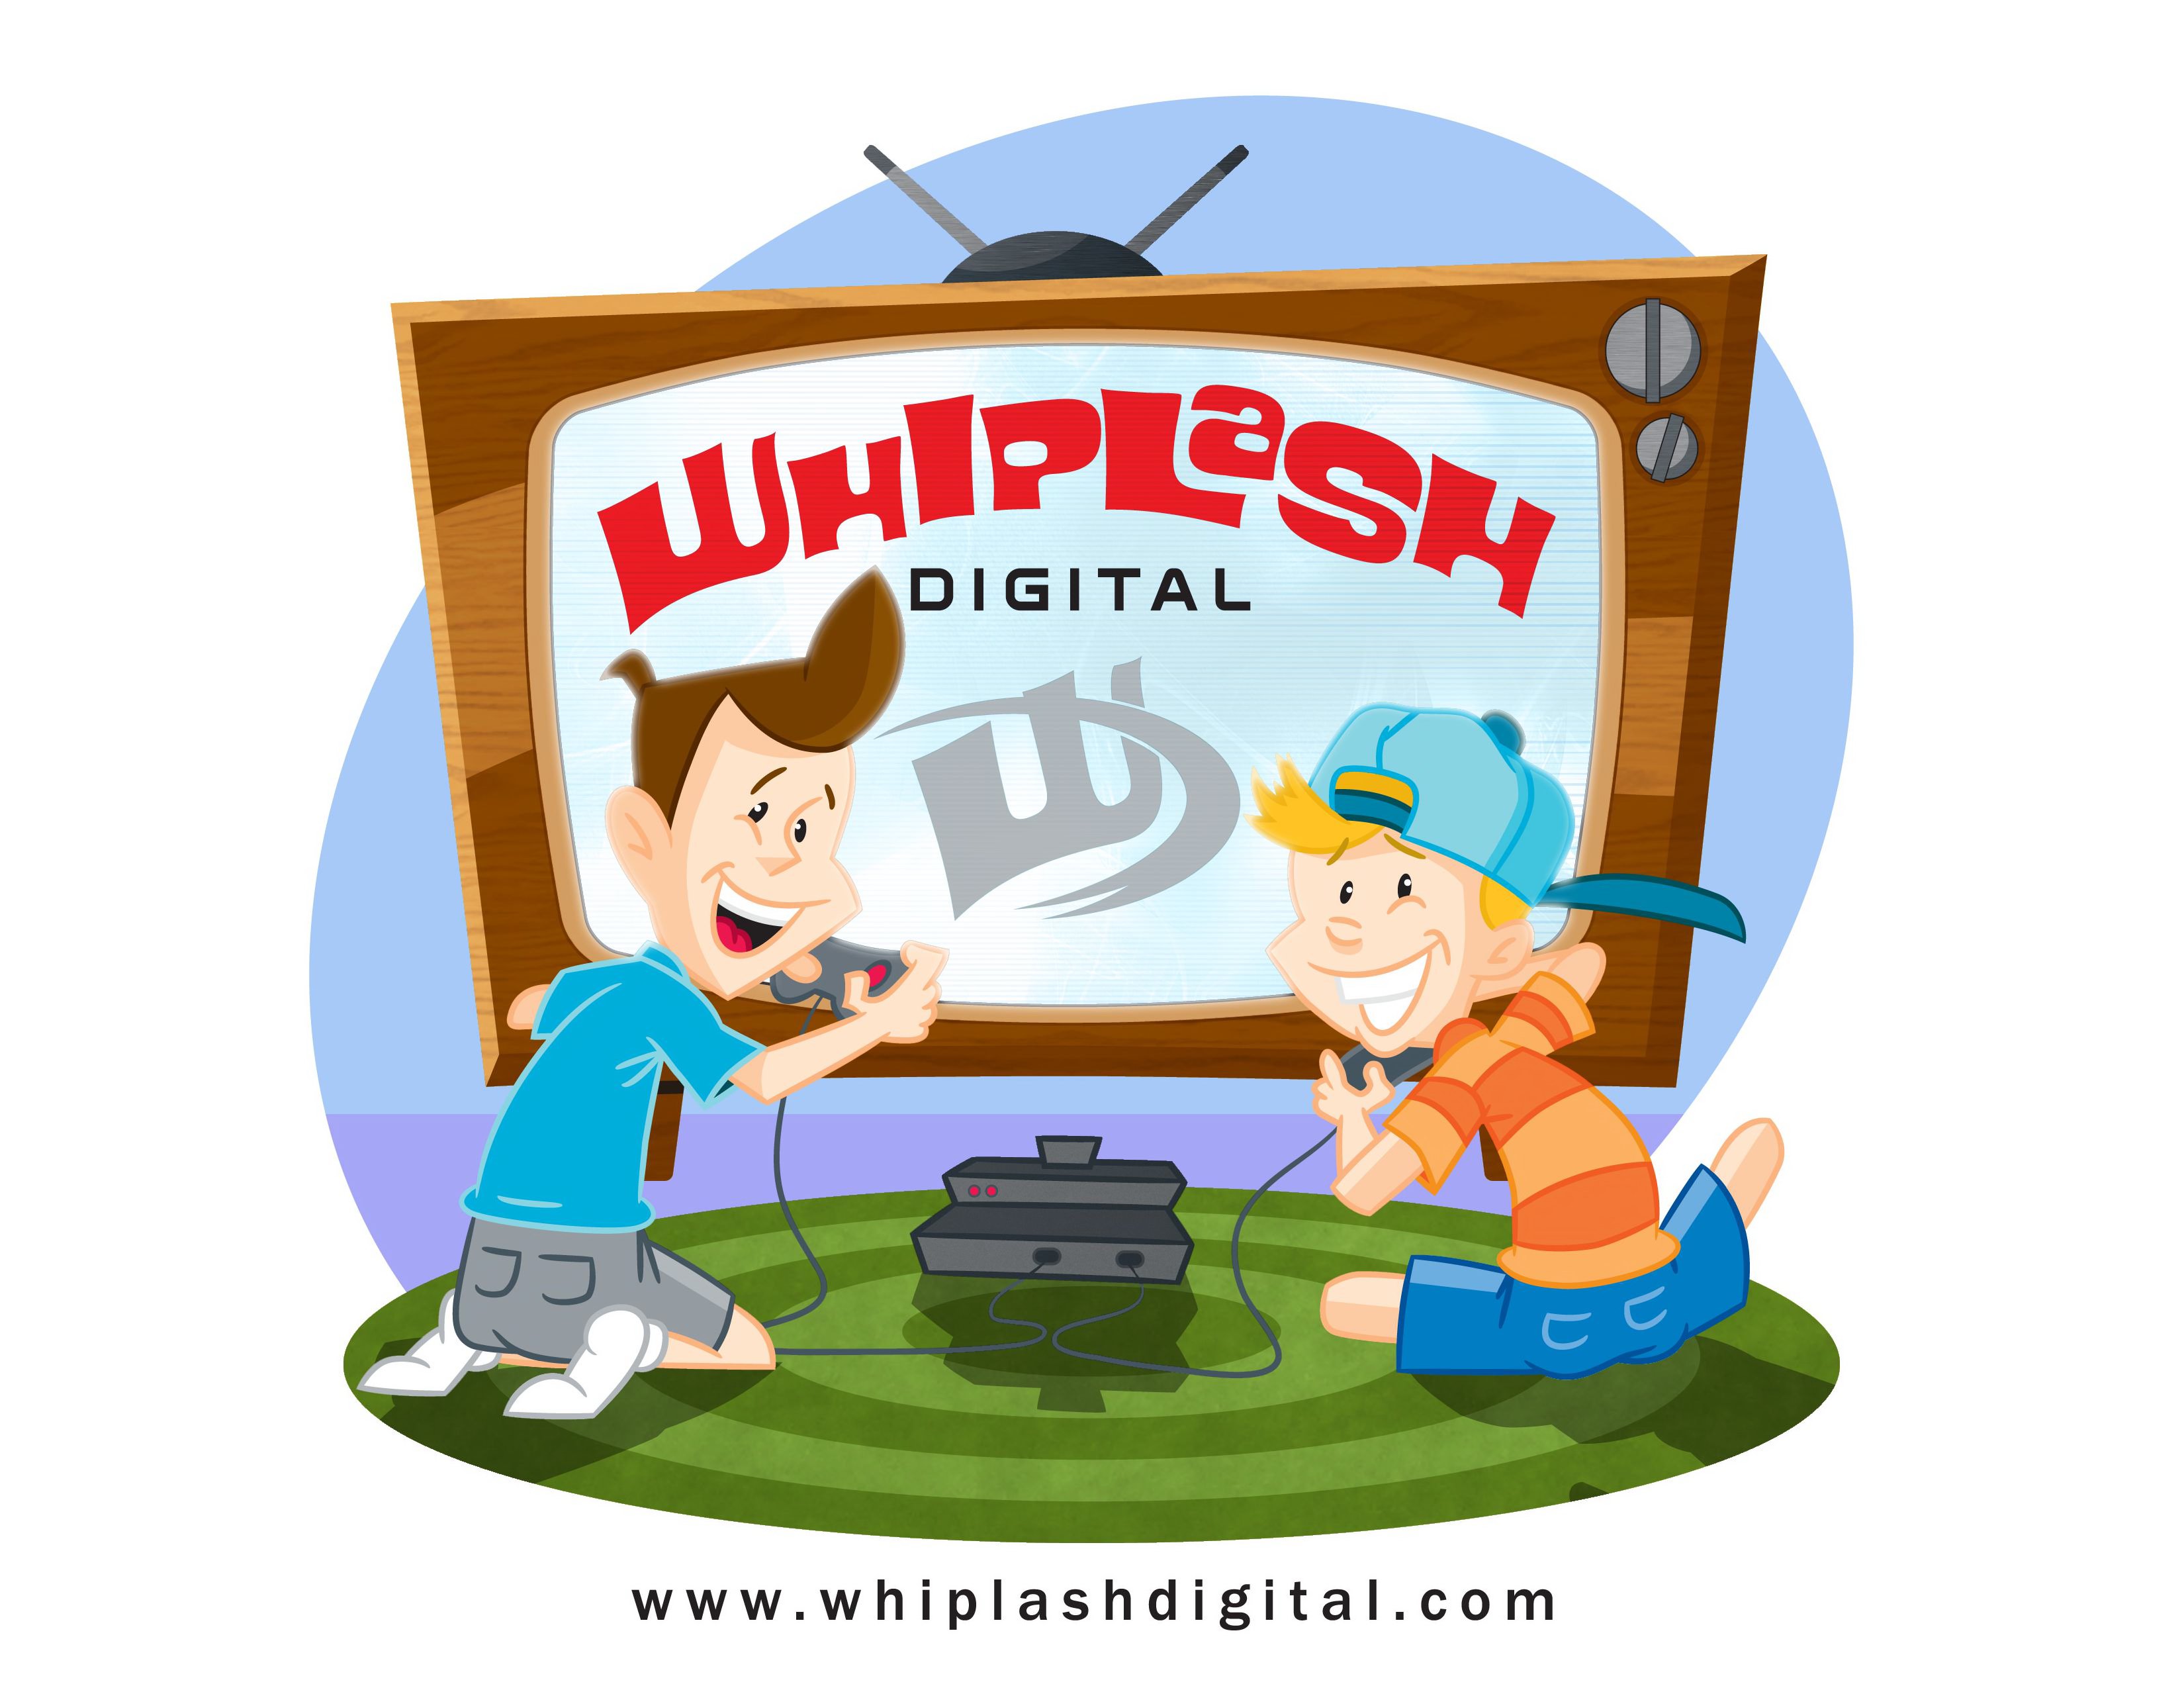  WHIPLASH DIGITAL WWW.WHIPLASHDIGITAL.COM